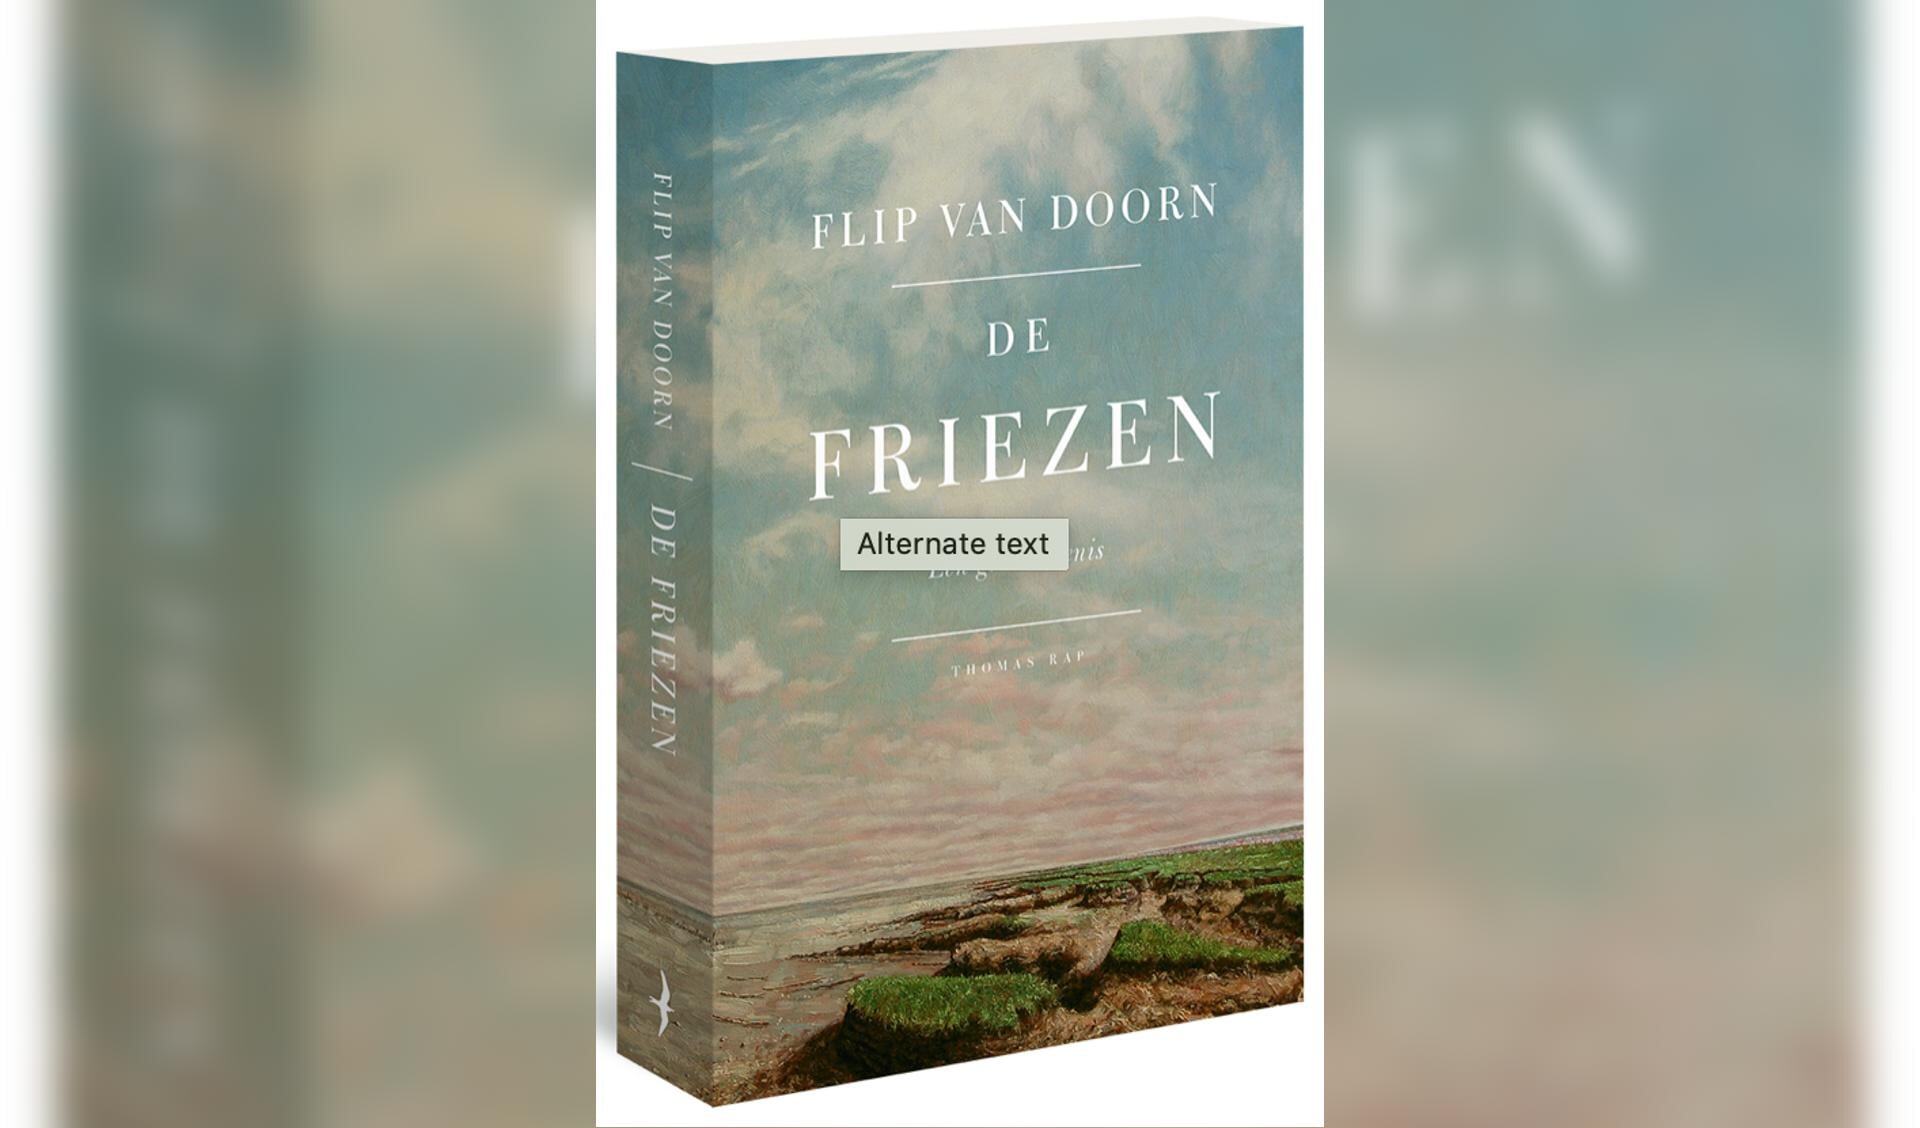 Het boek van Flip van Doorn over De Friezen.